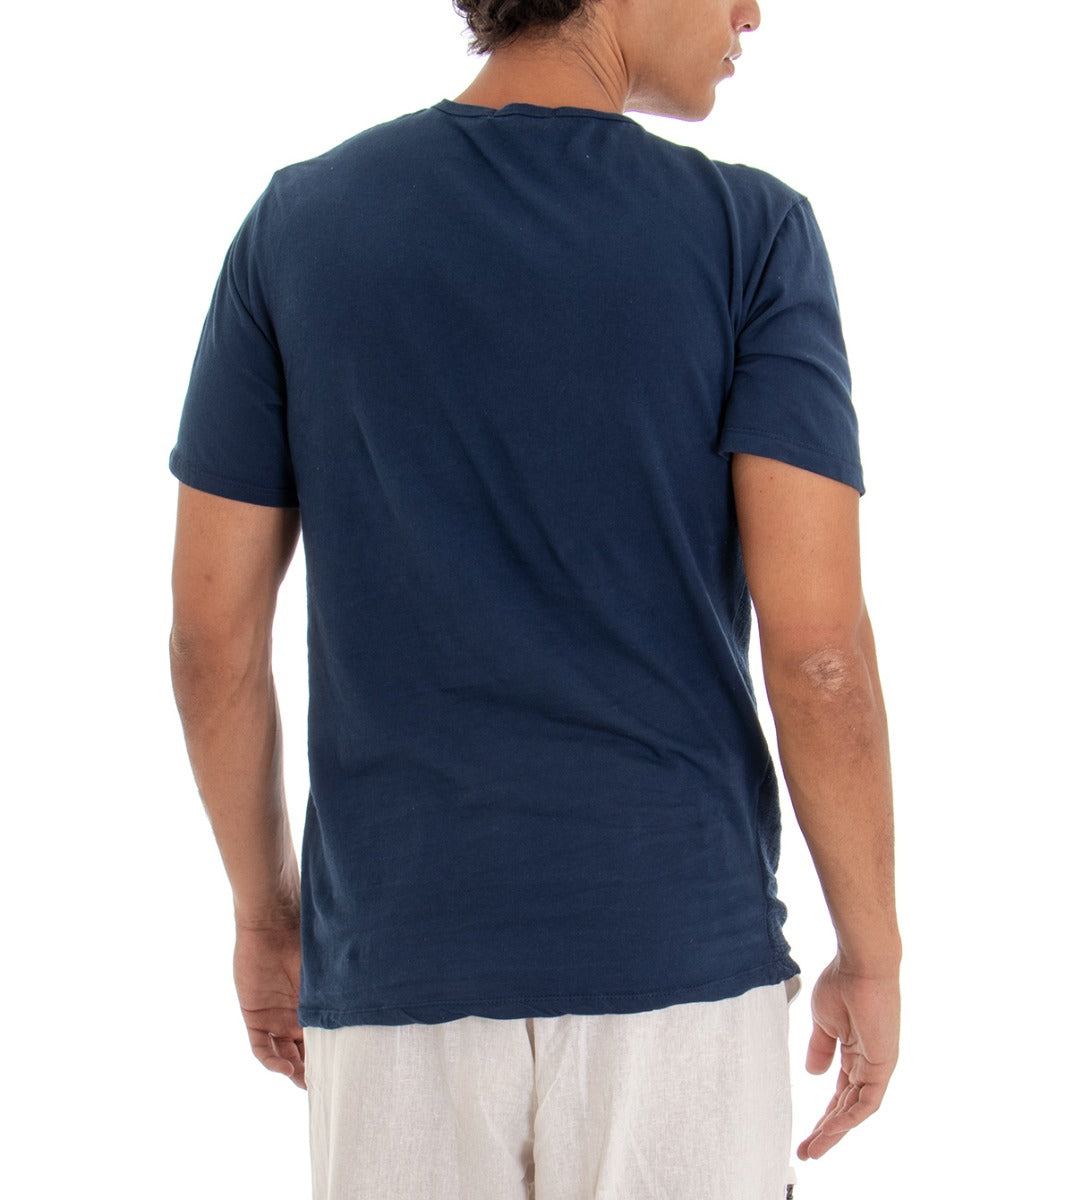 T-shirt Uomo Maglia Manica Corta Tinta Unita Blu Taschino GIOSAL